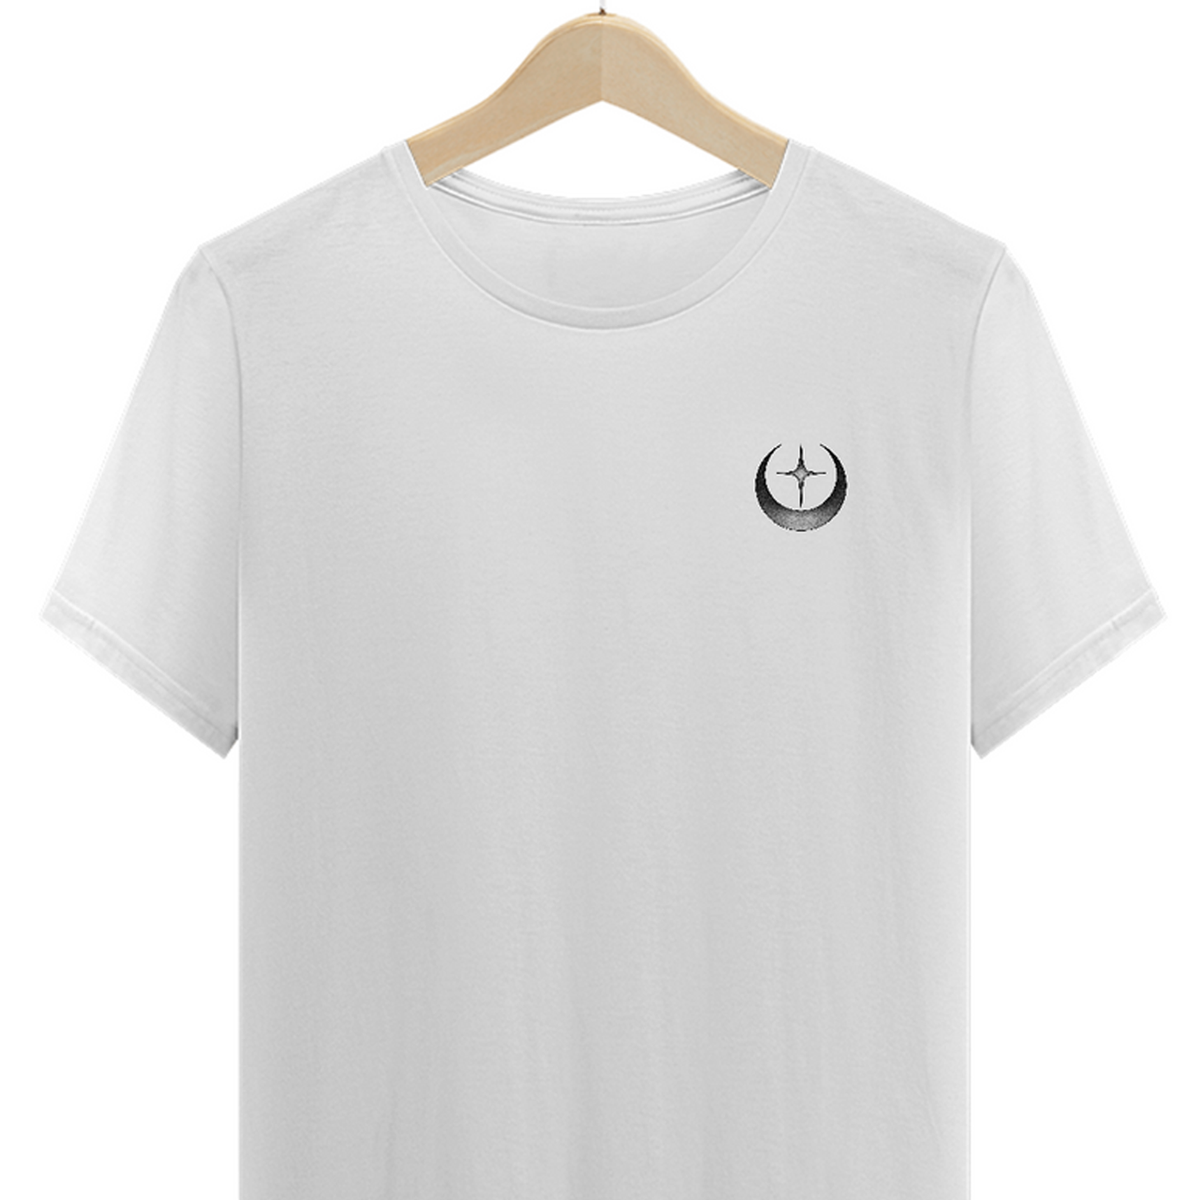 Nome do produto: Camiseta Moonstar